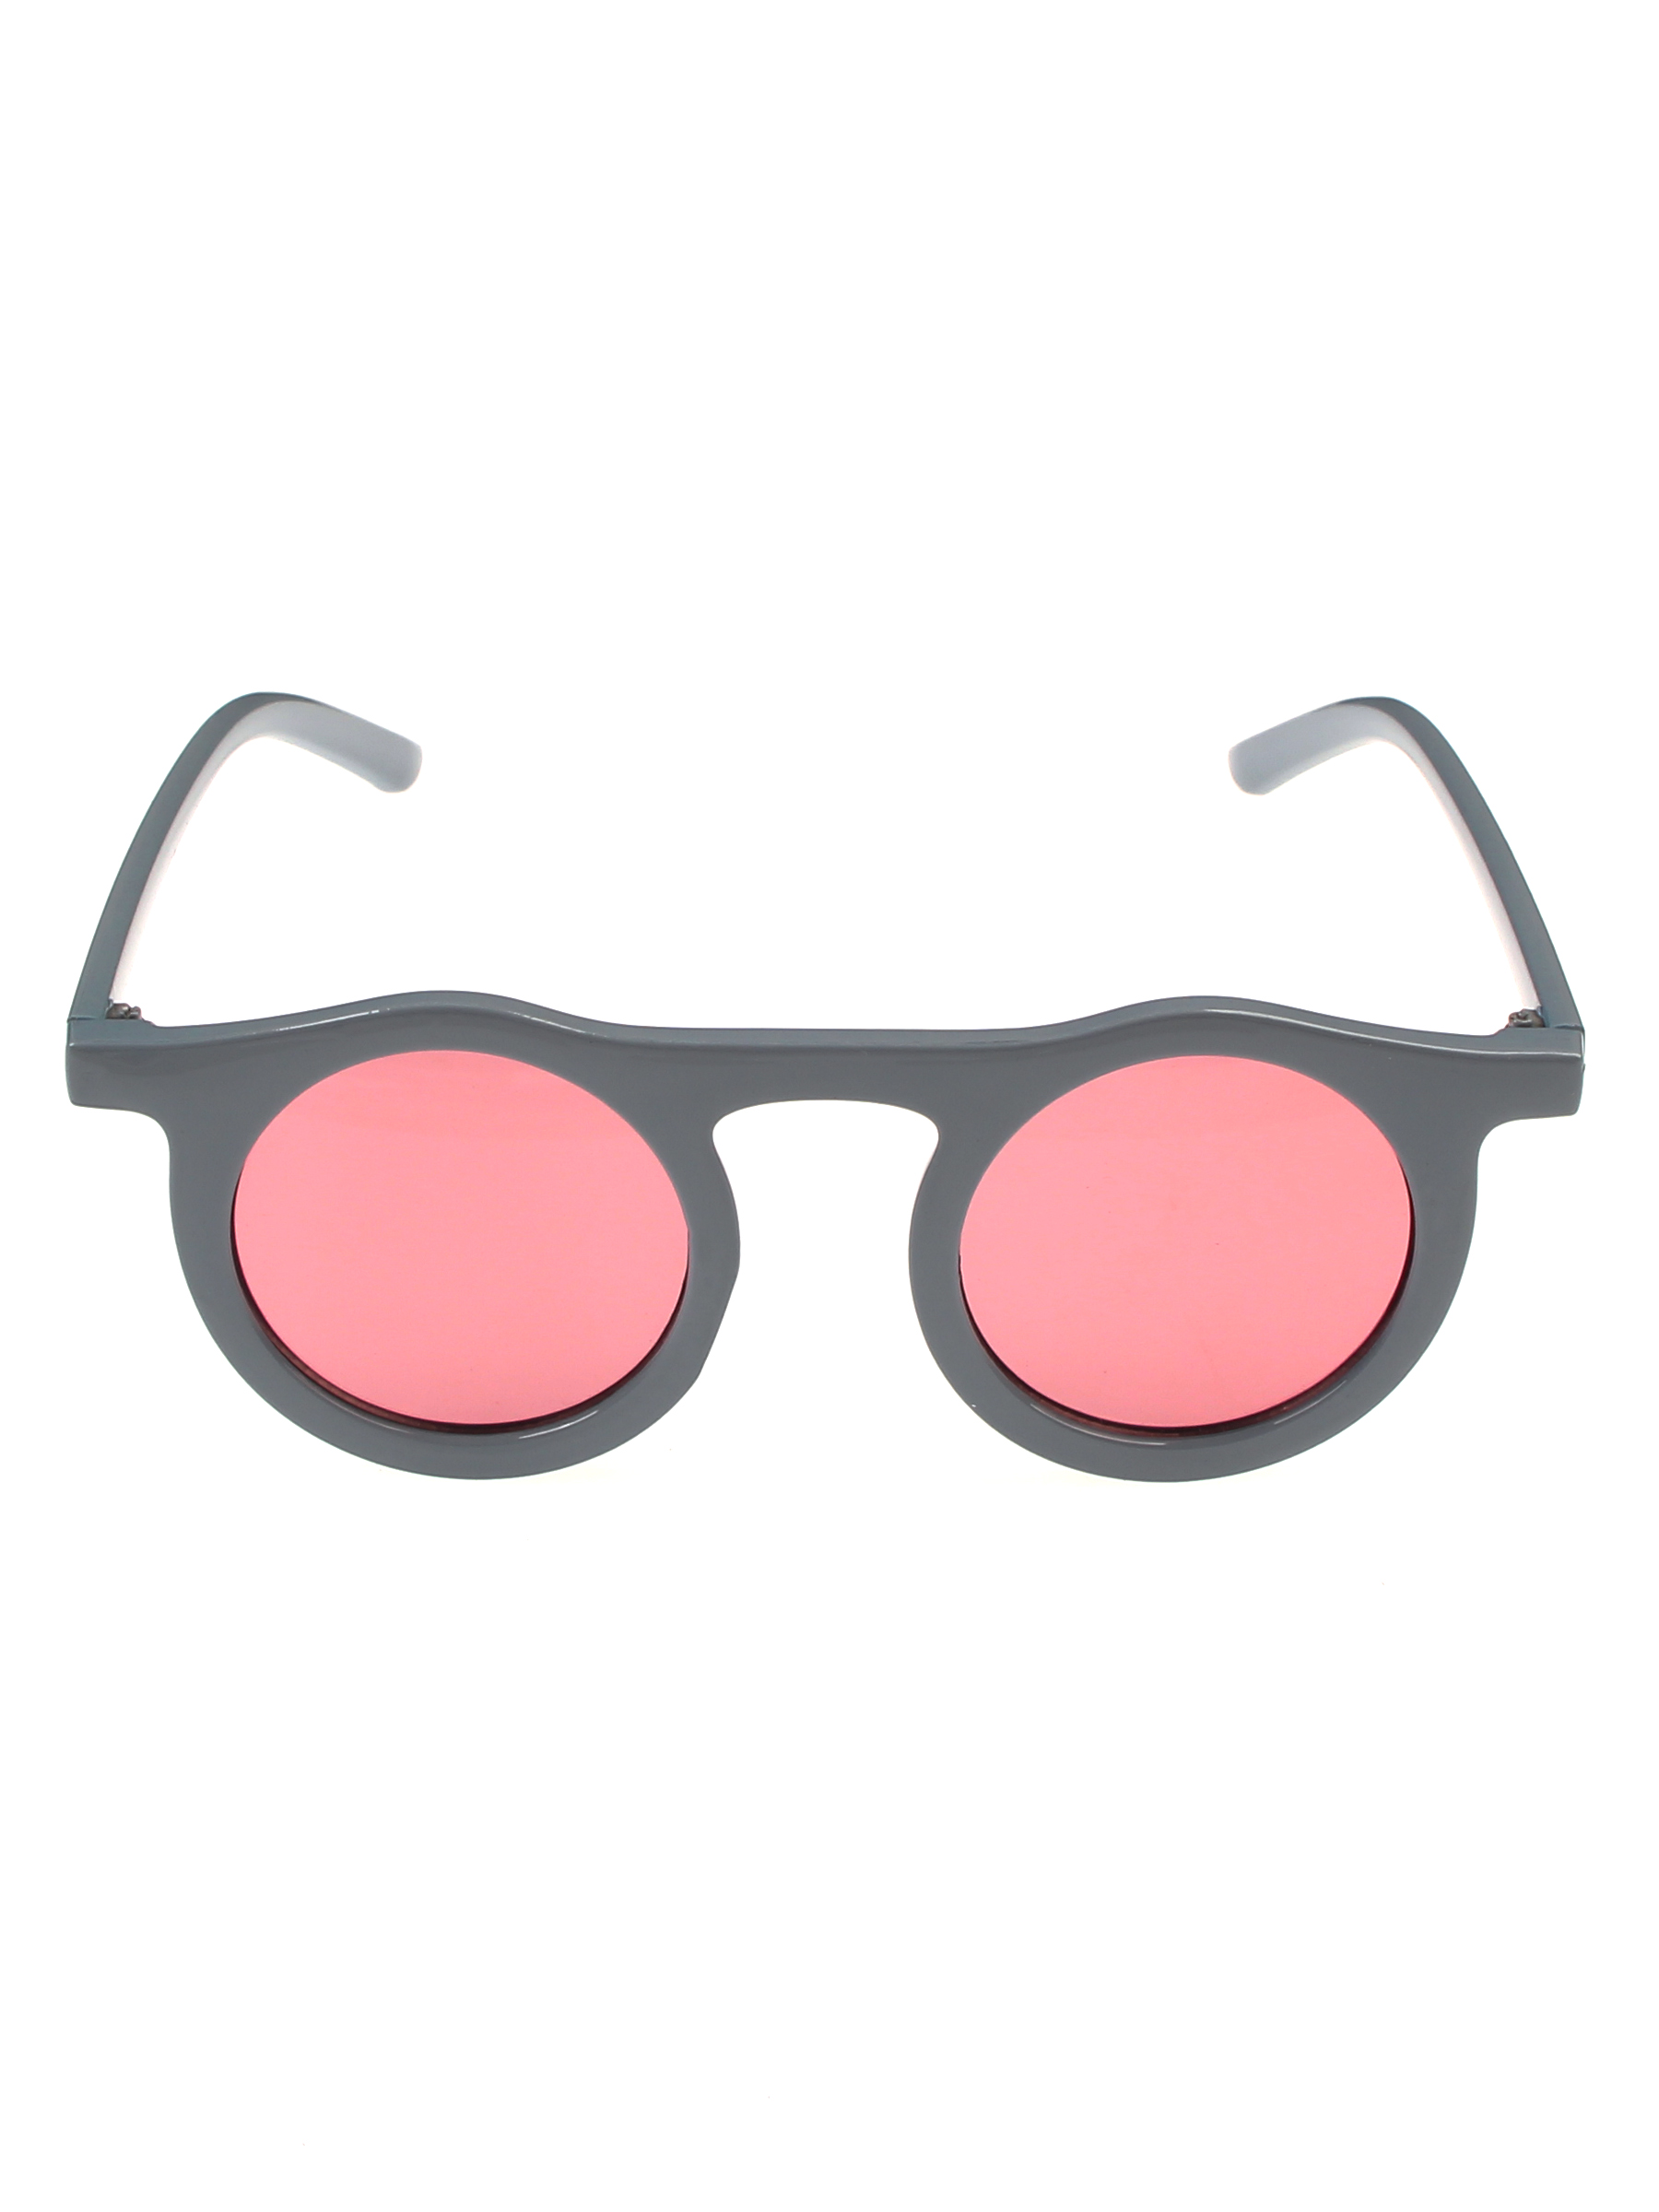 Солнцезащитные очки женские Pretty Mania NDP013 розовые